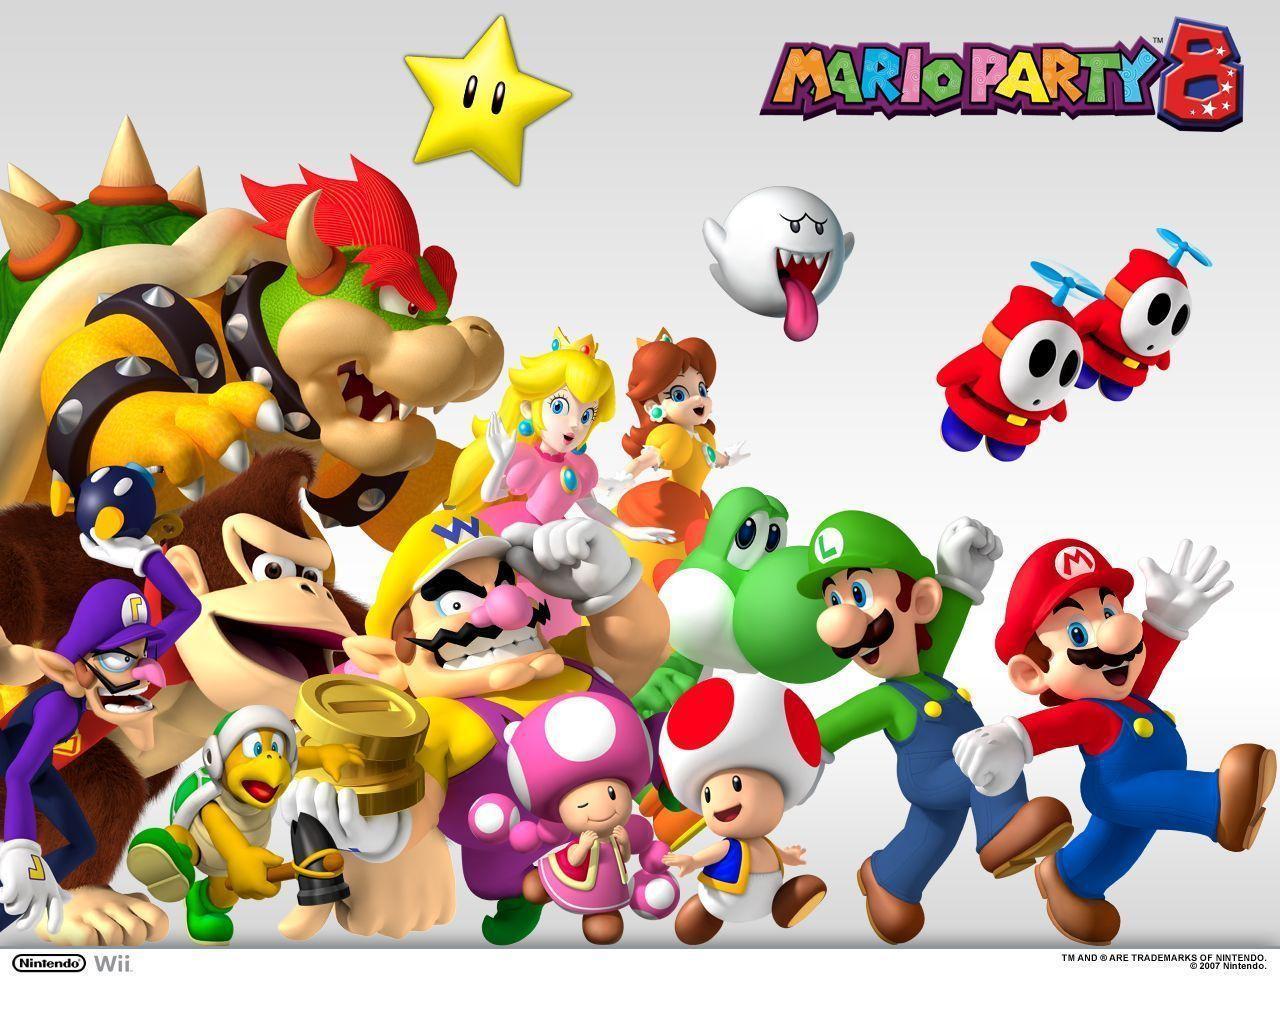 1280 x 1024 · jpeg - Super Mario Party Wallpapers - Wallpaper Cave